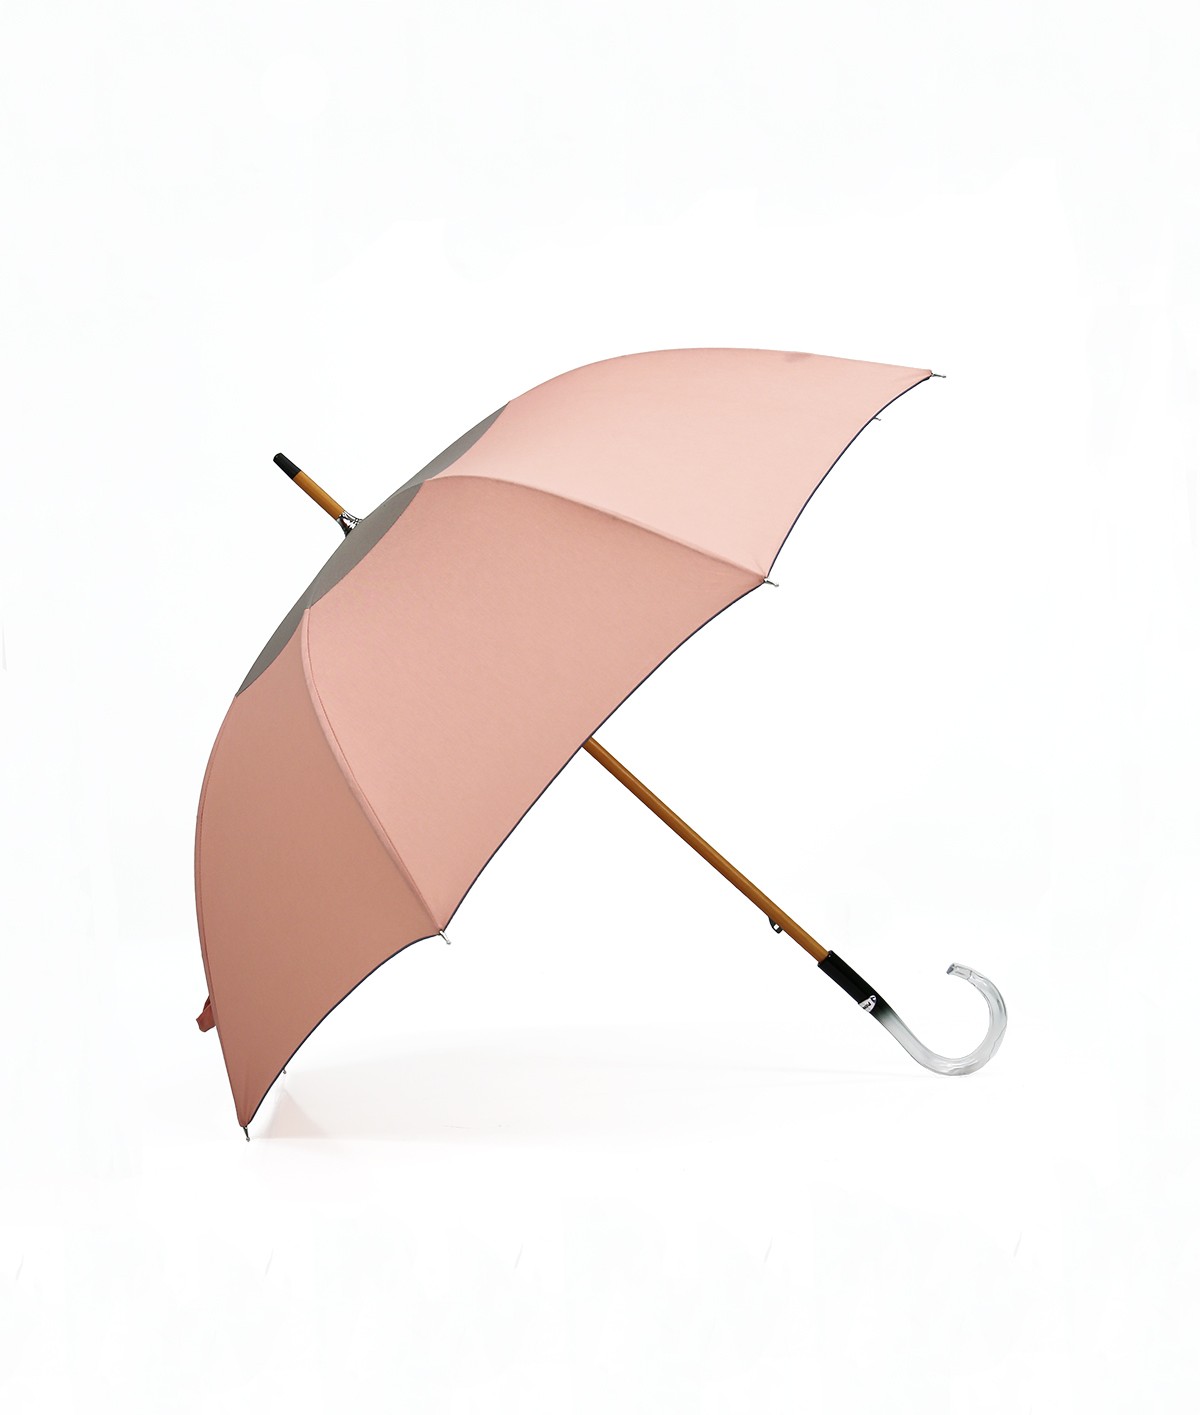 → Parapluie-Ombrelle - Série Limitée "Les Bicolors" - Rose et Gris - Fabrication Made in France